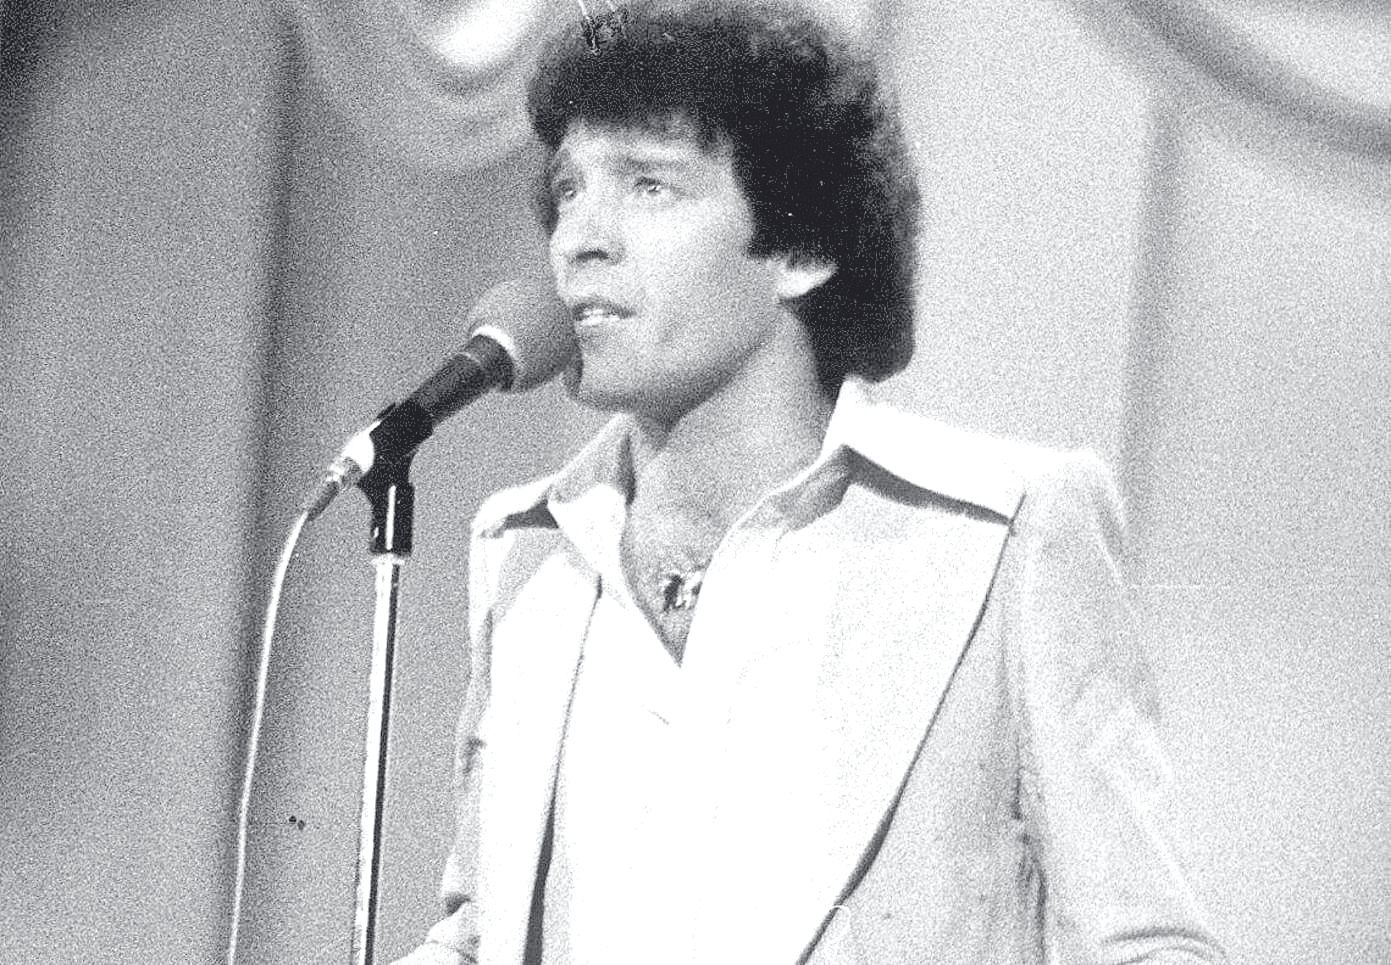 En 1970, Llorenç Santamaria inició su carrera en solitario, que le llevaría al éxito.